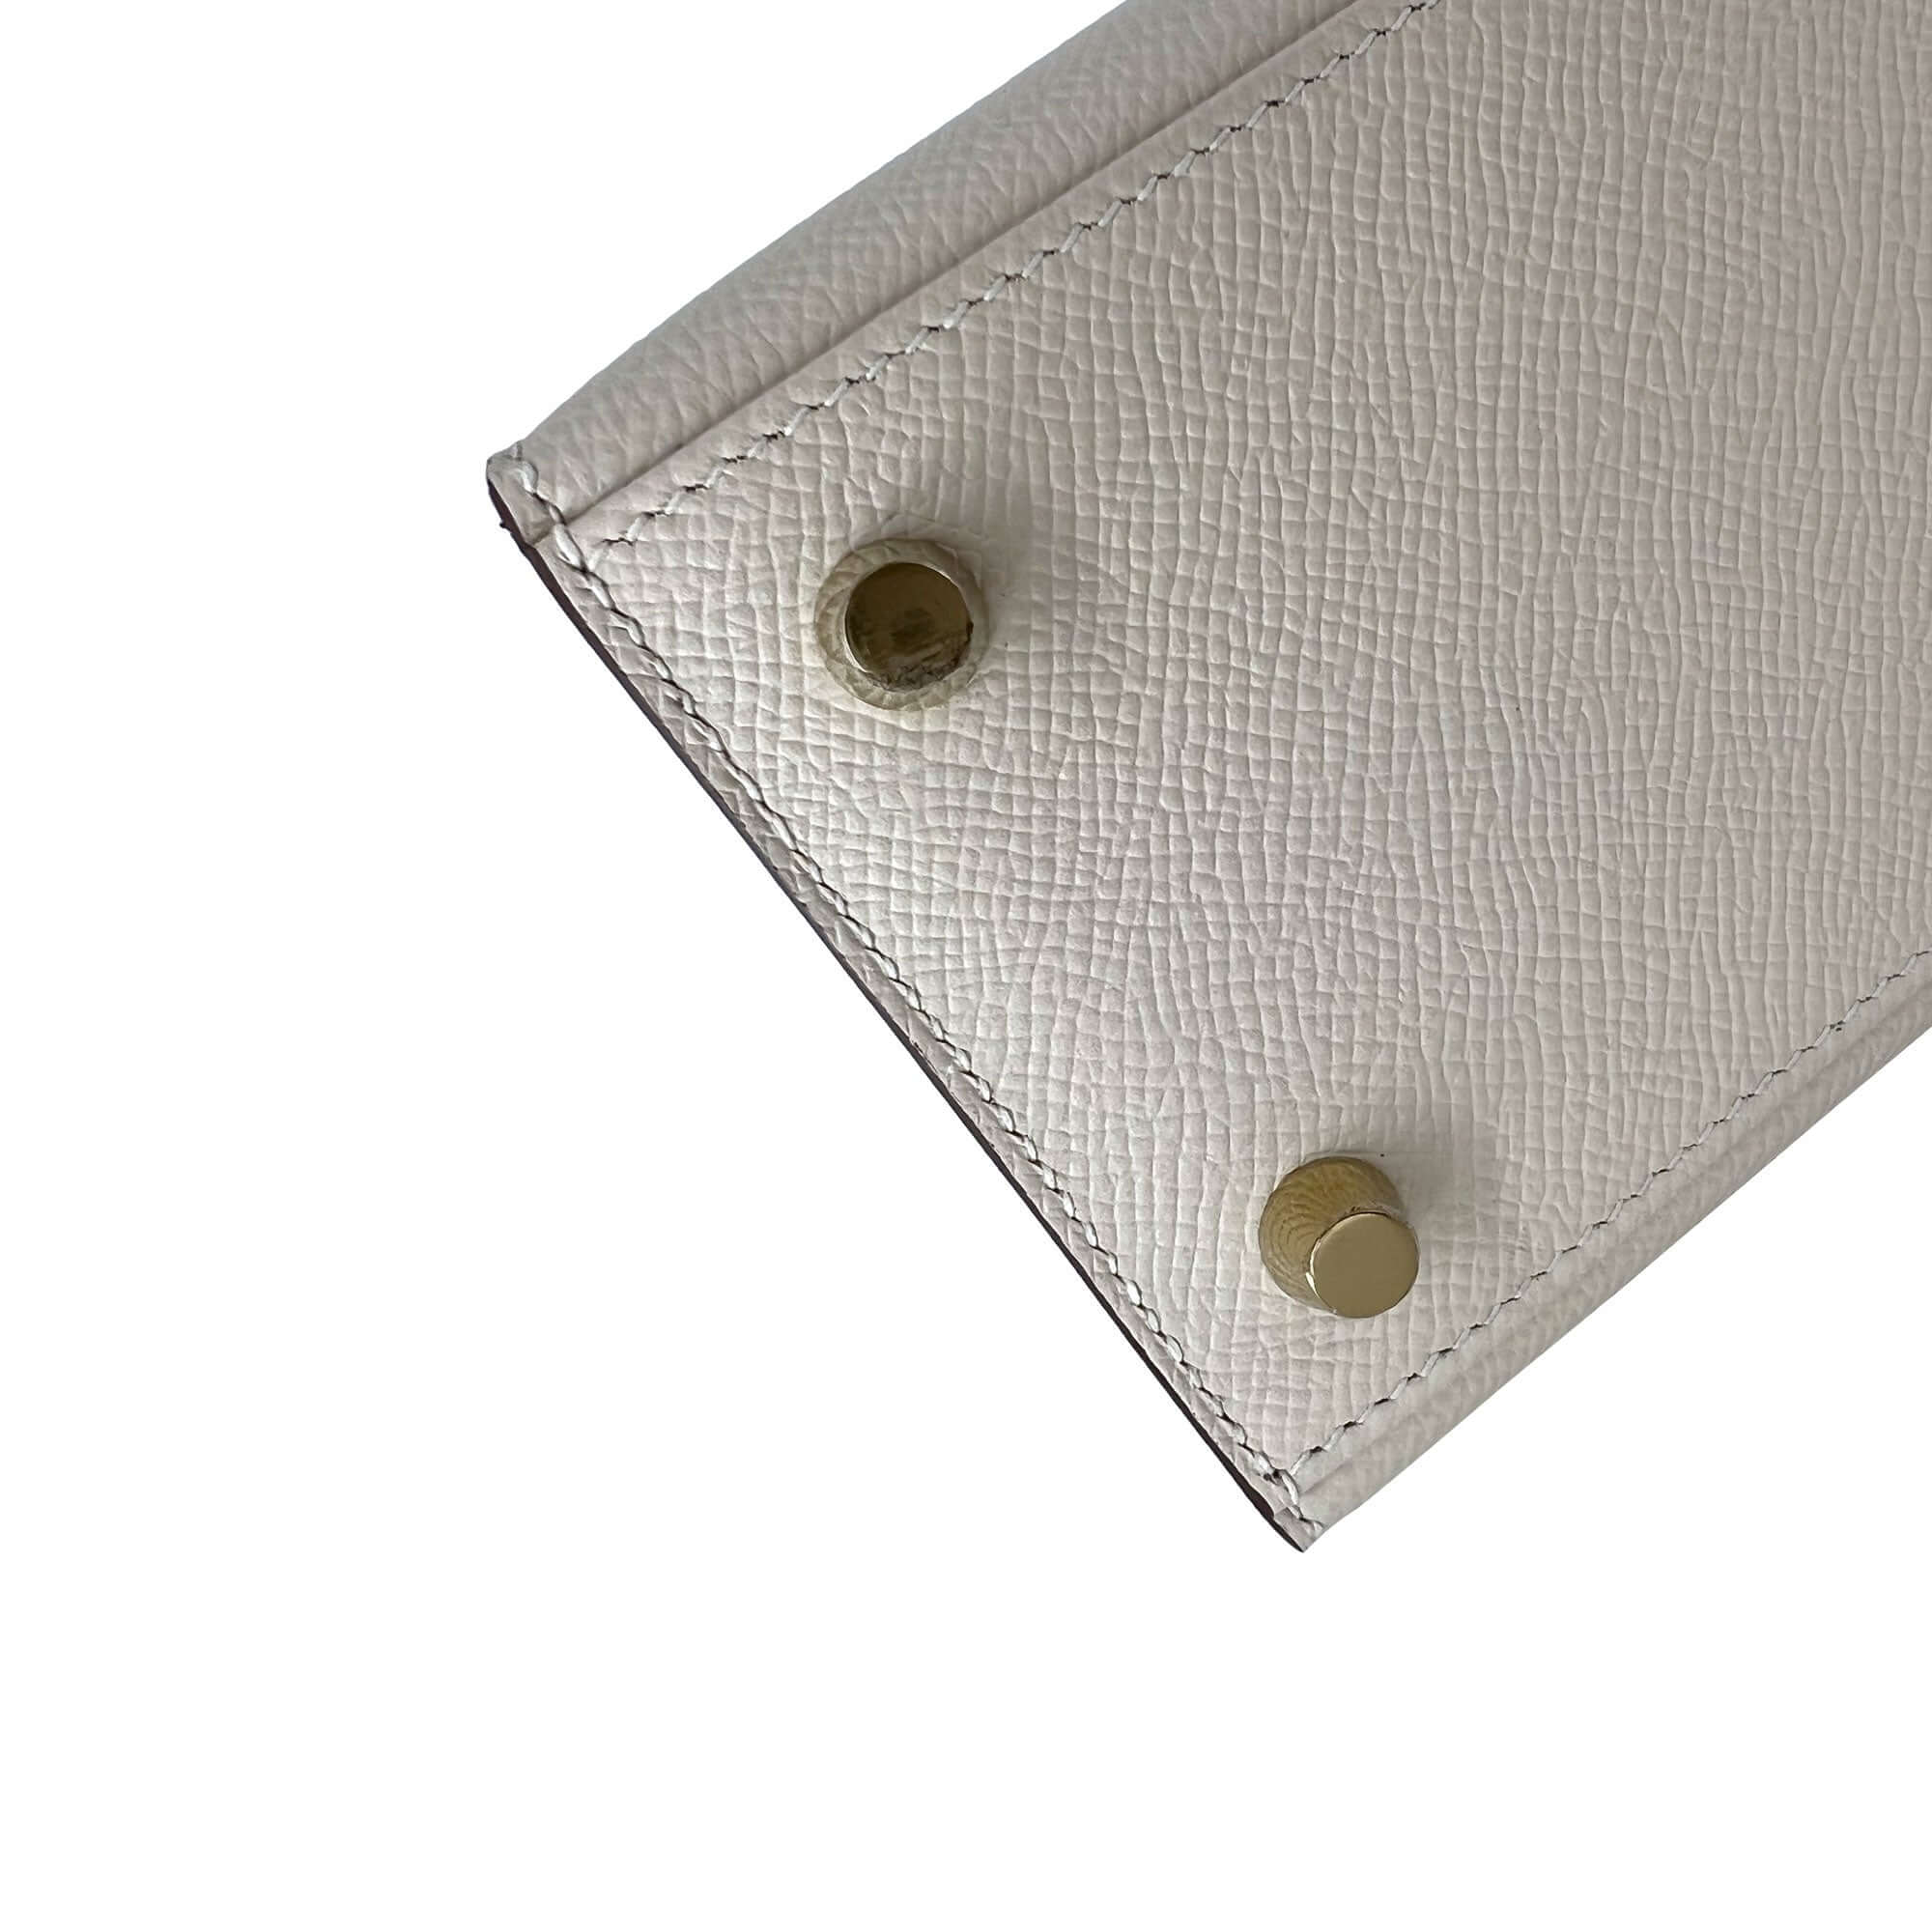 Top Quality Hermes Kelly Craie Epsom leather designer bag K25 GHW